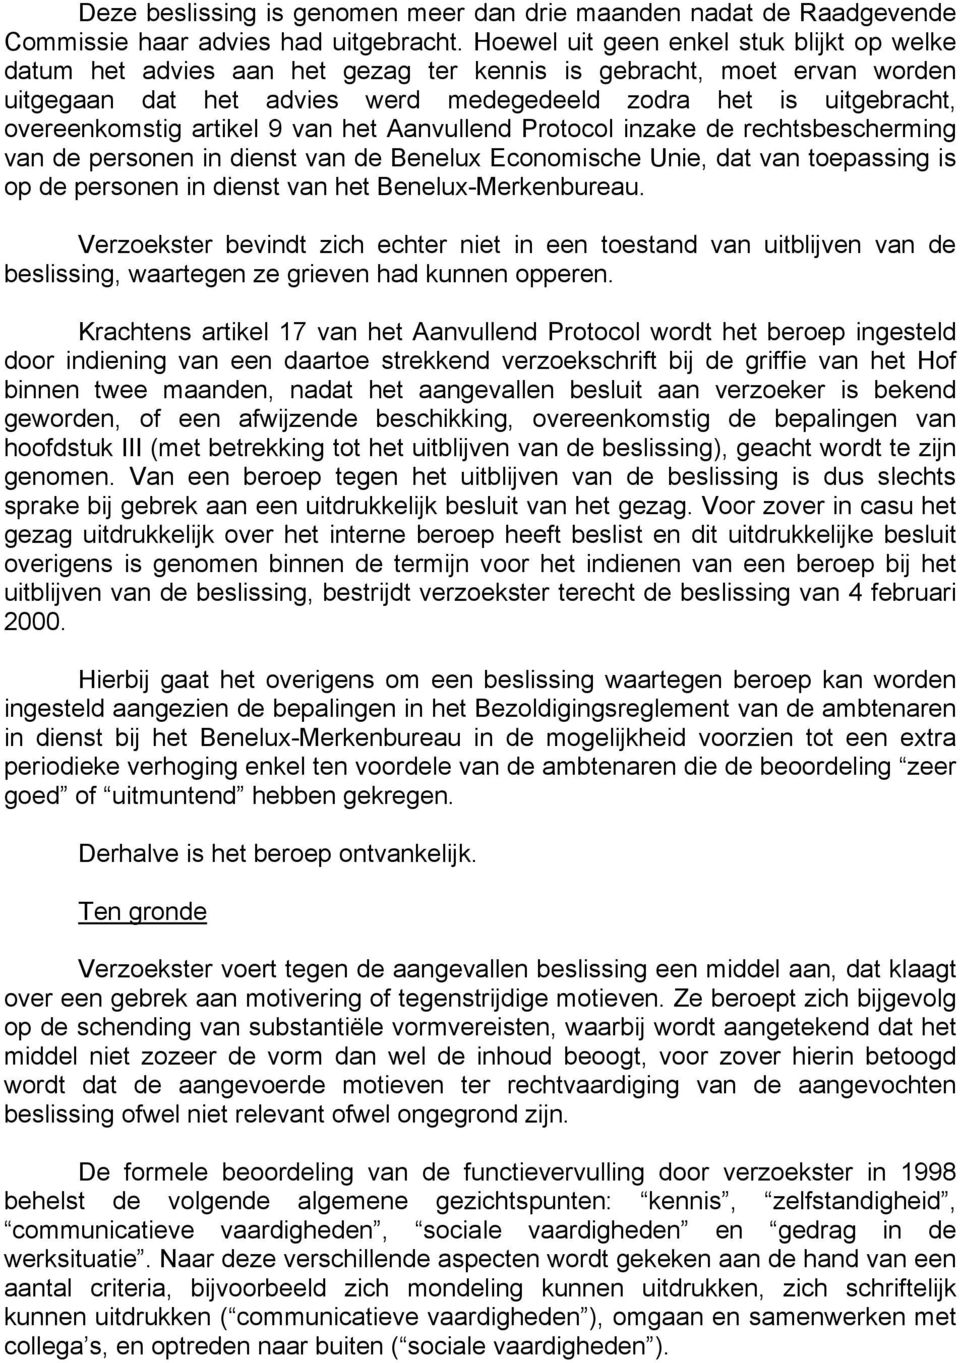 artikel 9 van het Aanvullend Protocol inzake de rechtsbescherming van de personen in dienst van de Benelux Economische Unie, dat van toepassing is op de personen in dienst van het